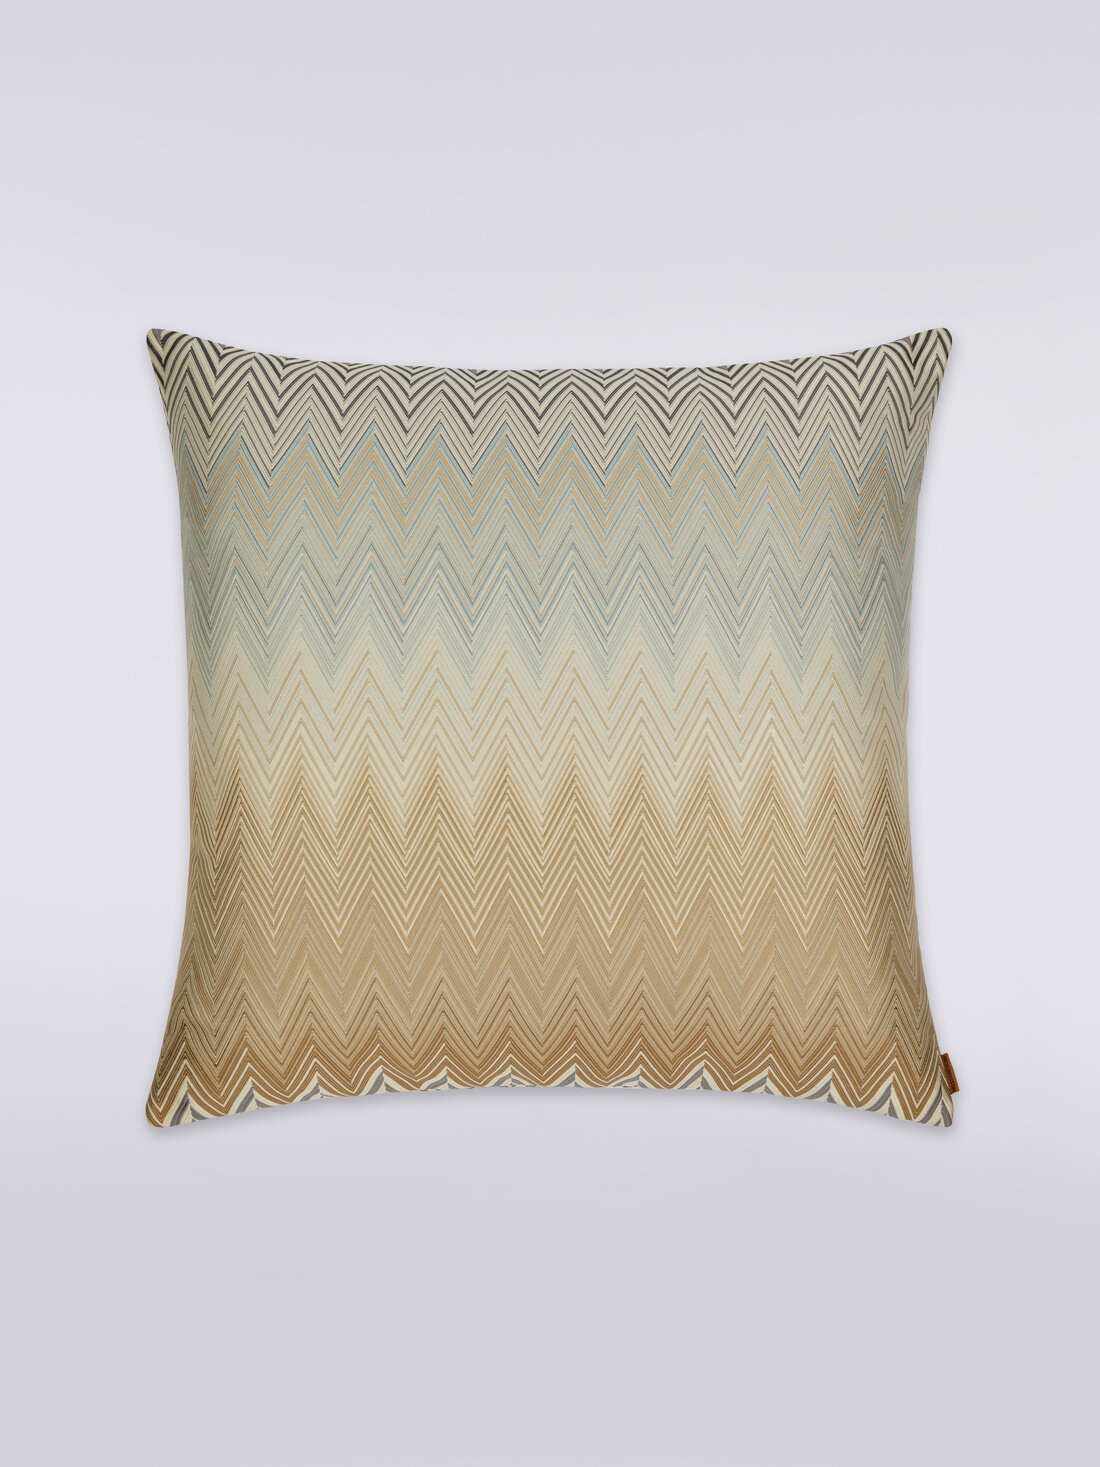 Bastia cushion 50x50 cm, Multicoloured  - 8051275607373 - 0